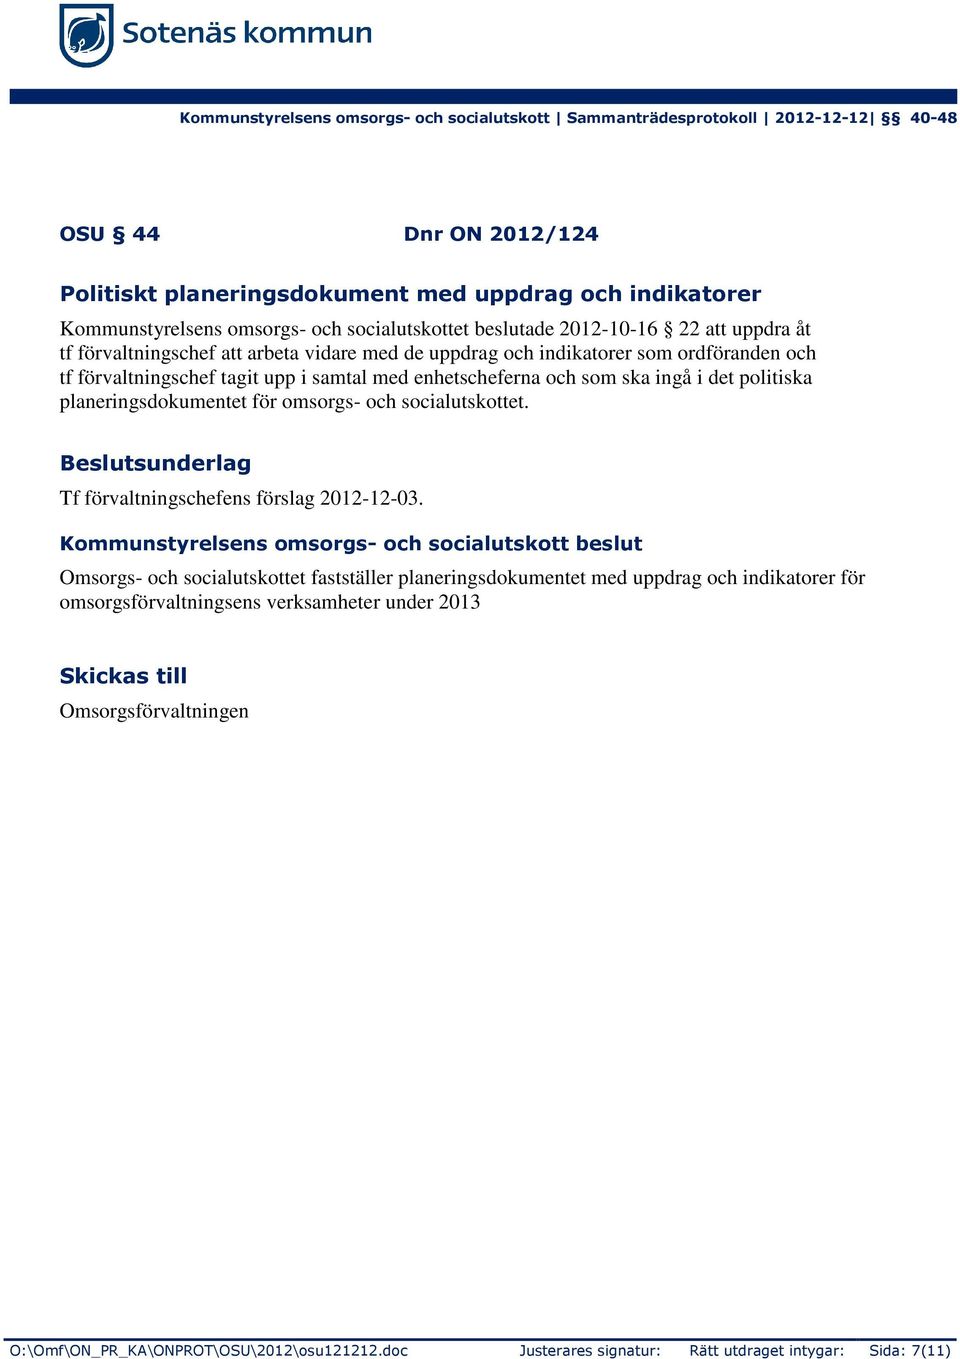 och socialutskottet. Beslutsunderlag Tf förvaltningschefens förslag 2012-12-03.